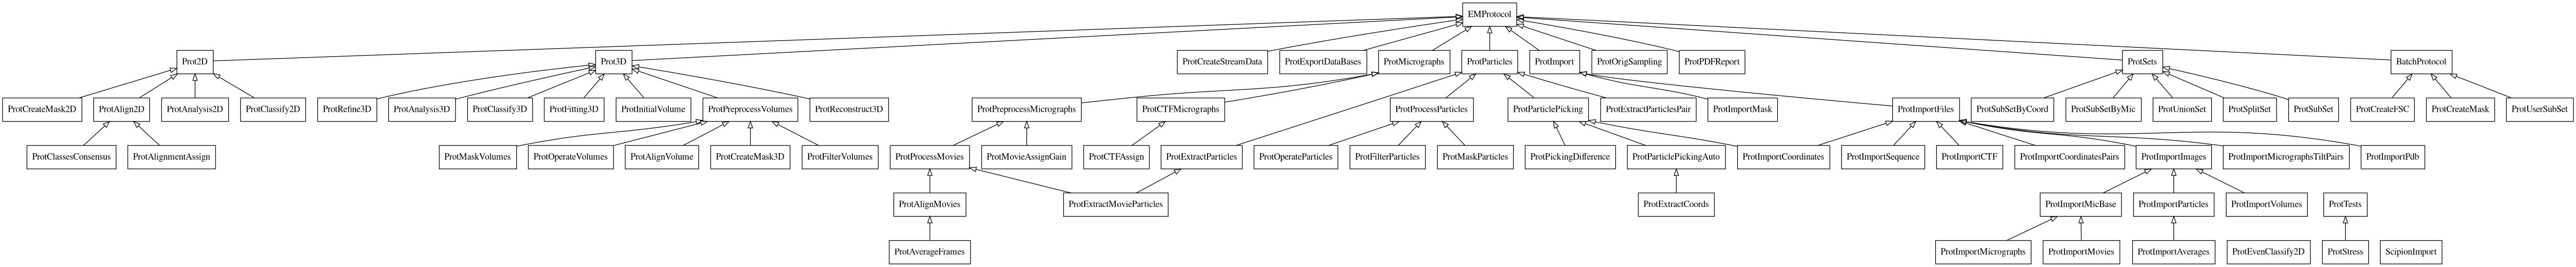 General EM protocols hierarchy